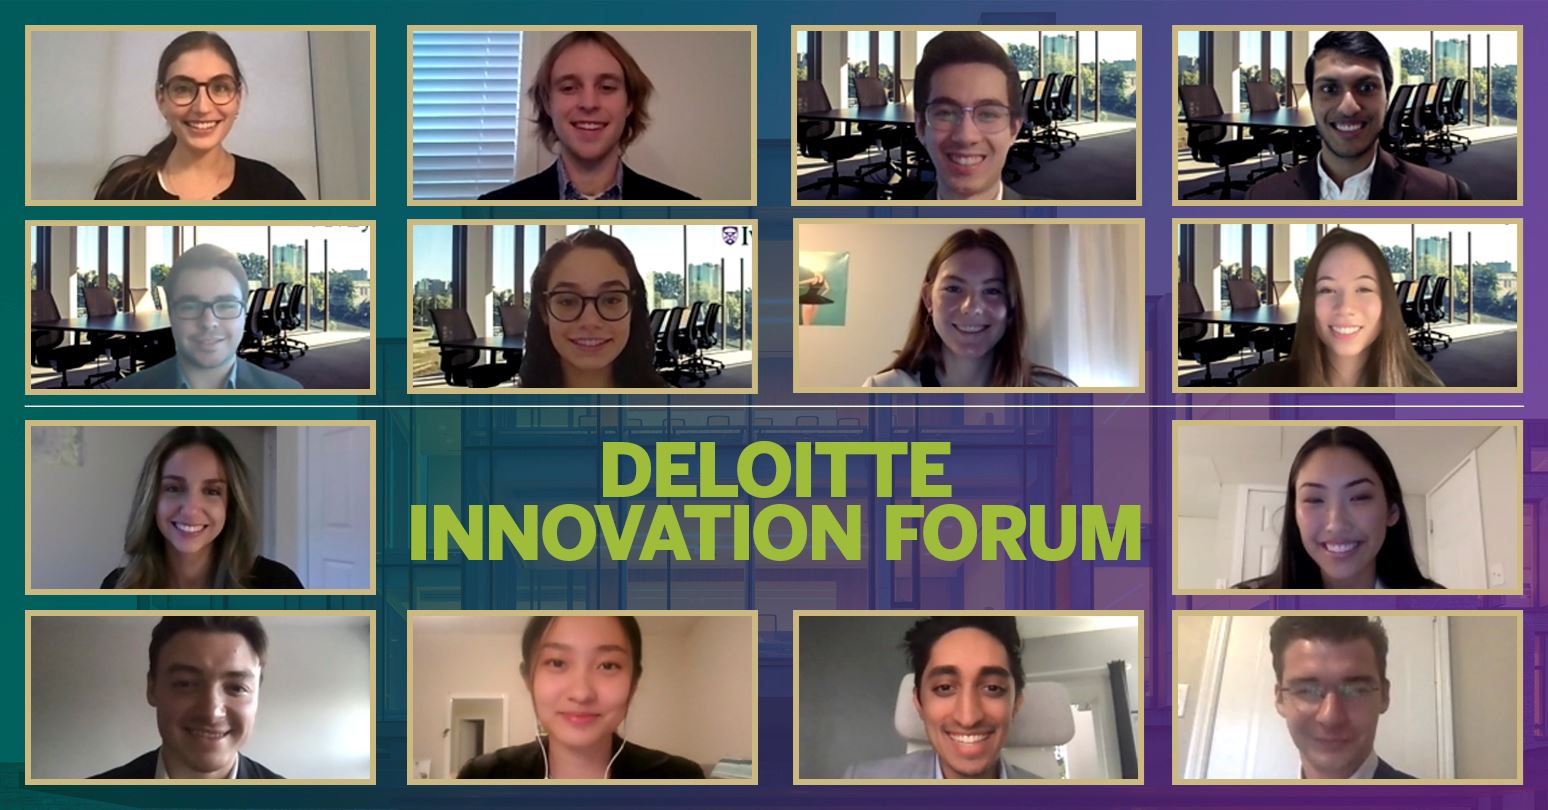 Deloitte Innovation Forum winning teams: Team 8 at top, Team two on bottom